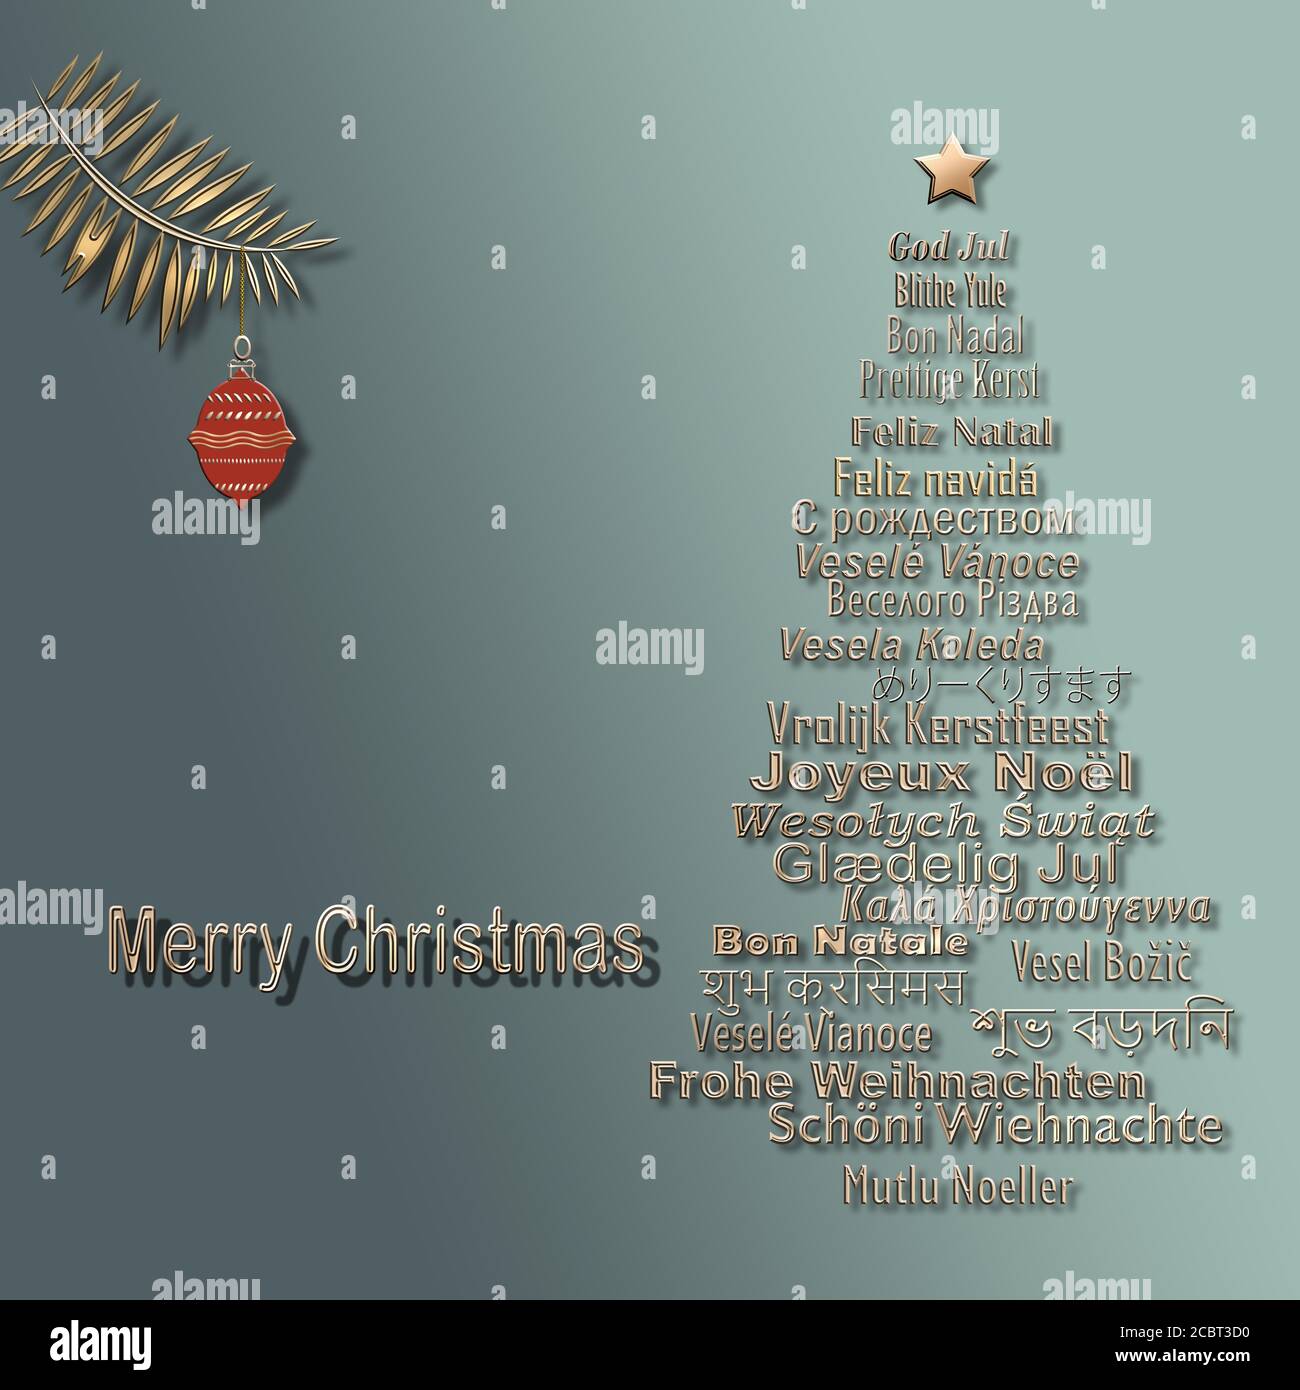 Grußkarte mit mehrsprachigen Wörtern Frohe Weihnachten in Form von Kiefer und hängenden roten Ball auf pastellgrünem Hintergrund. 3D-Illustration Stockfoto